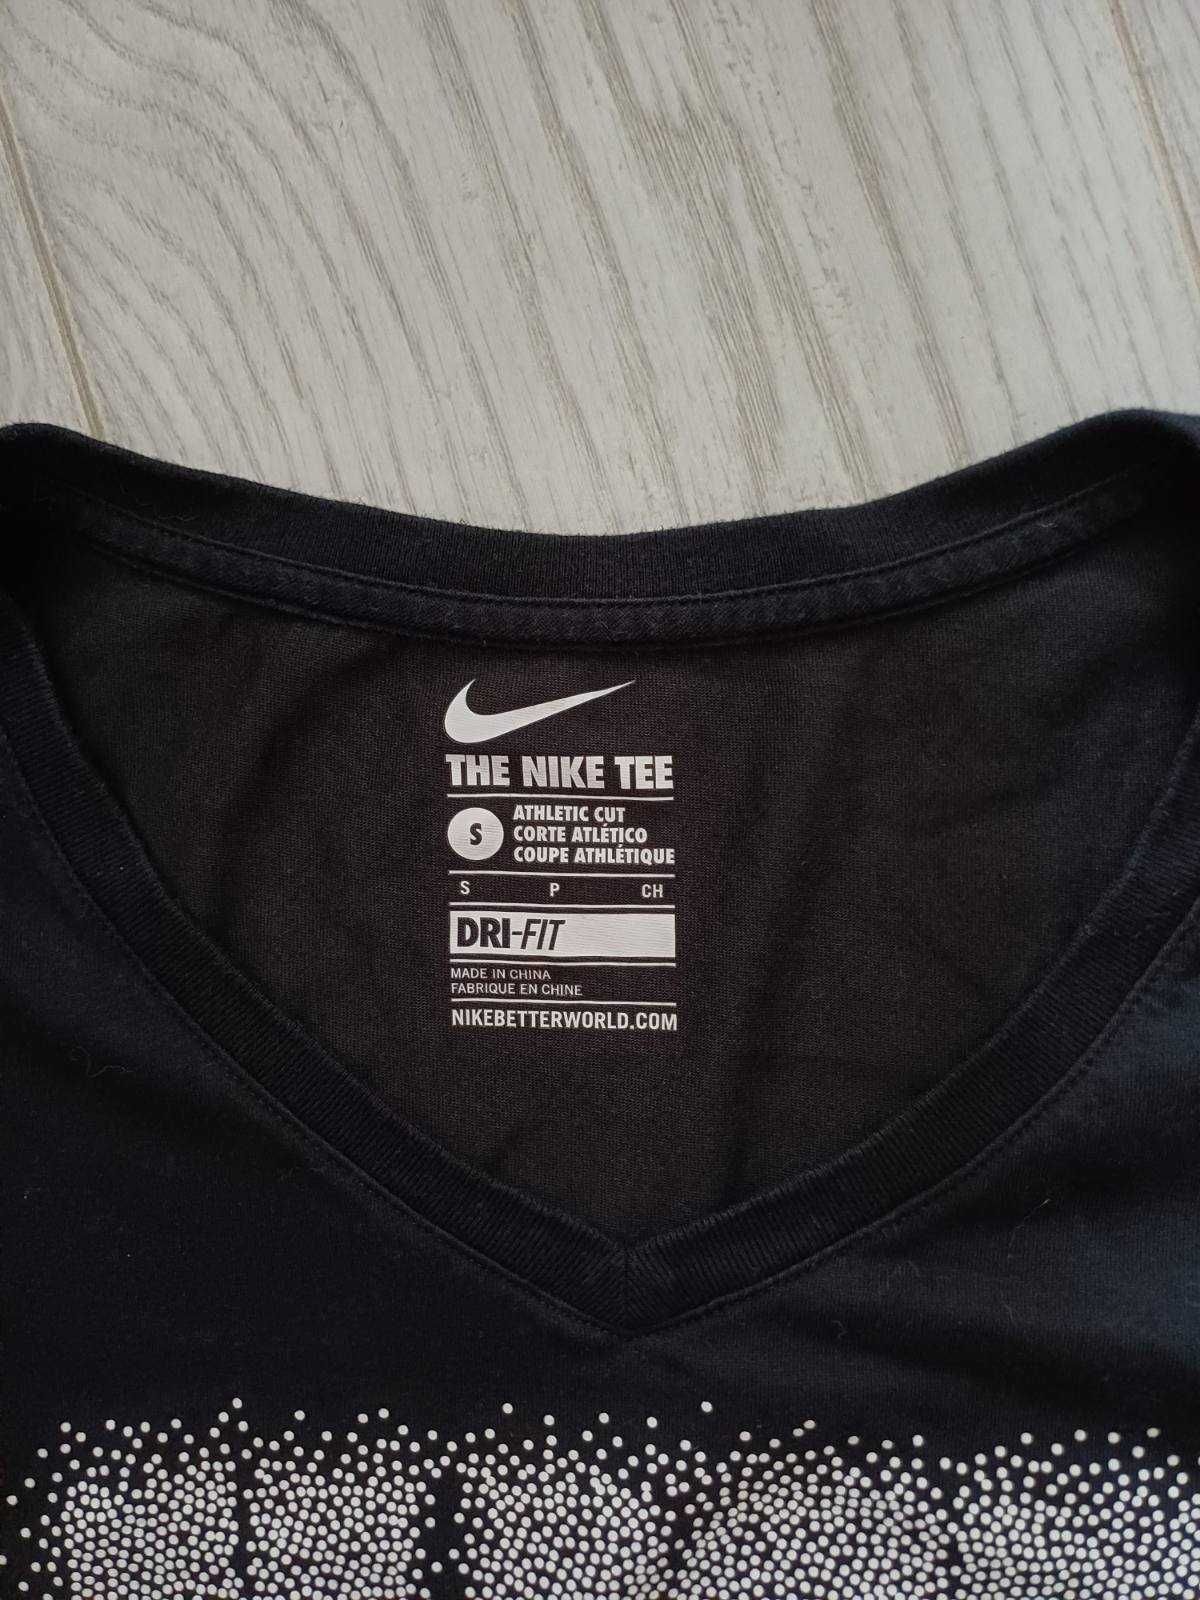 Nike Футболка Найк, р S в отличном состоянии